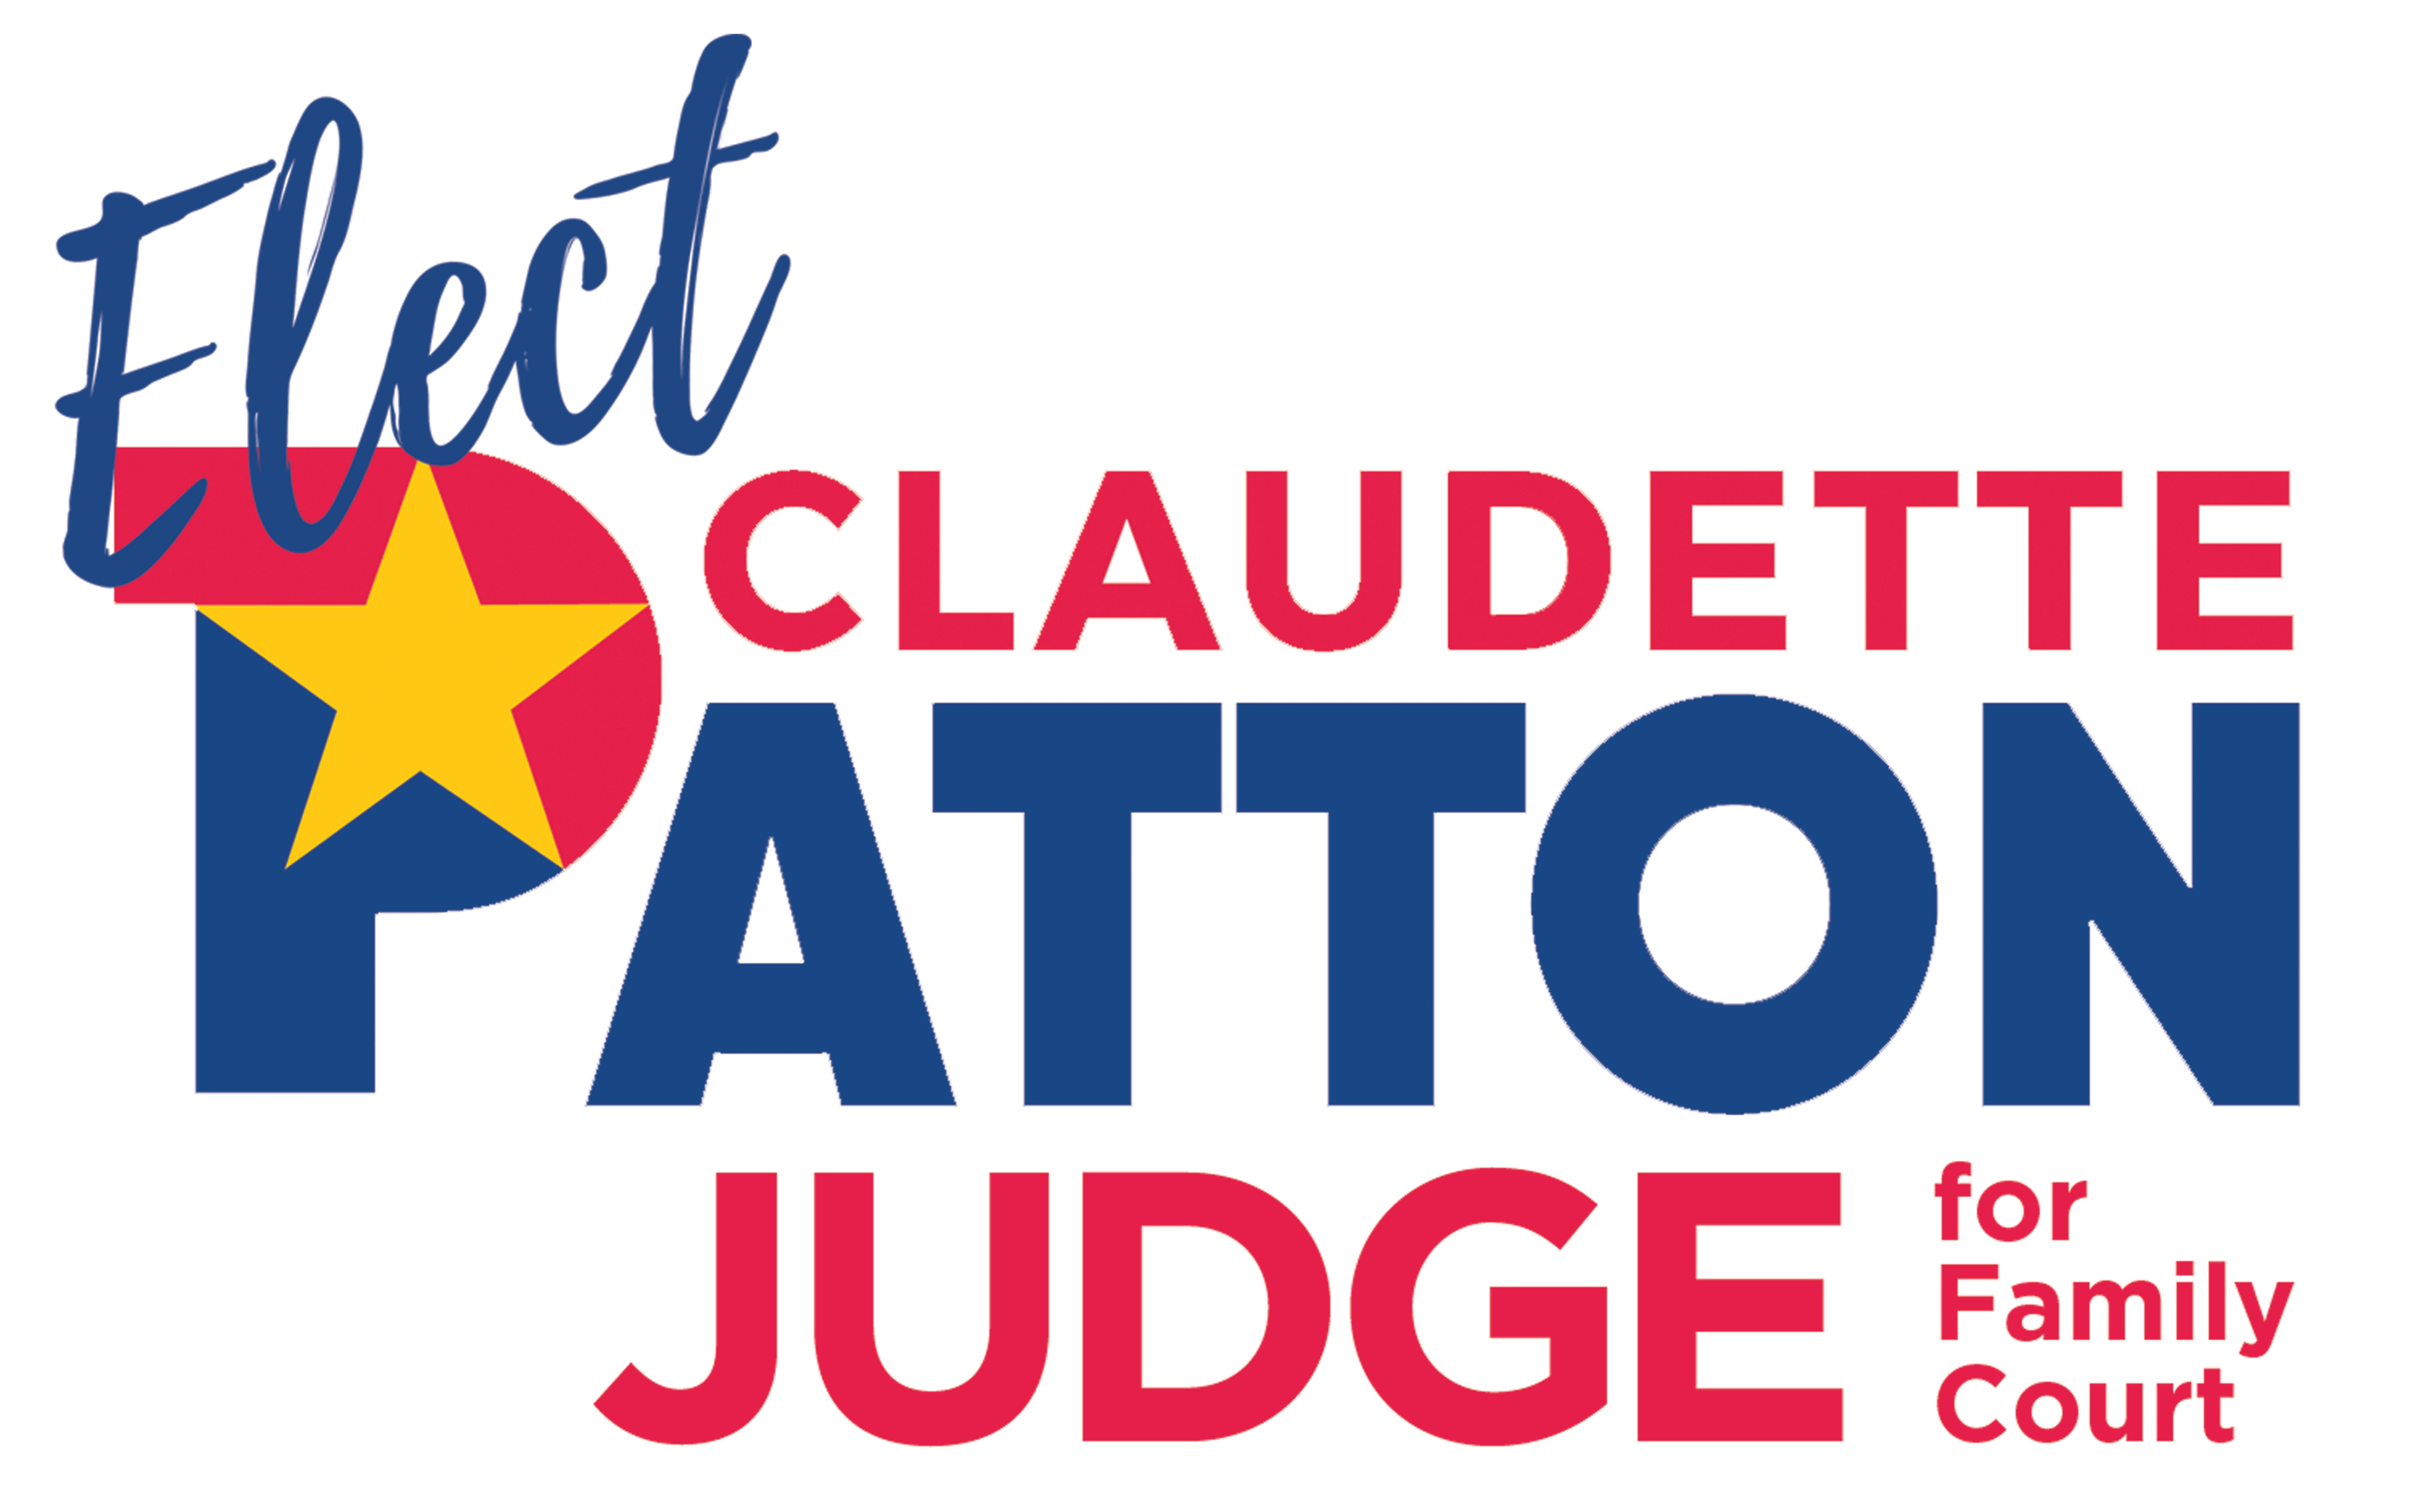 Claudette Patton For Family Court Judge